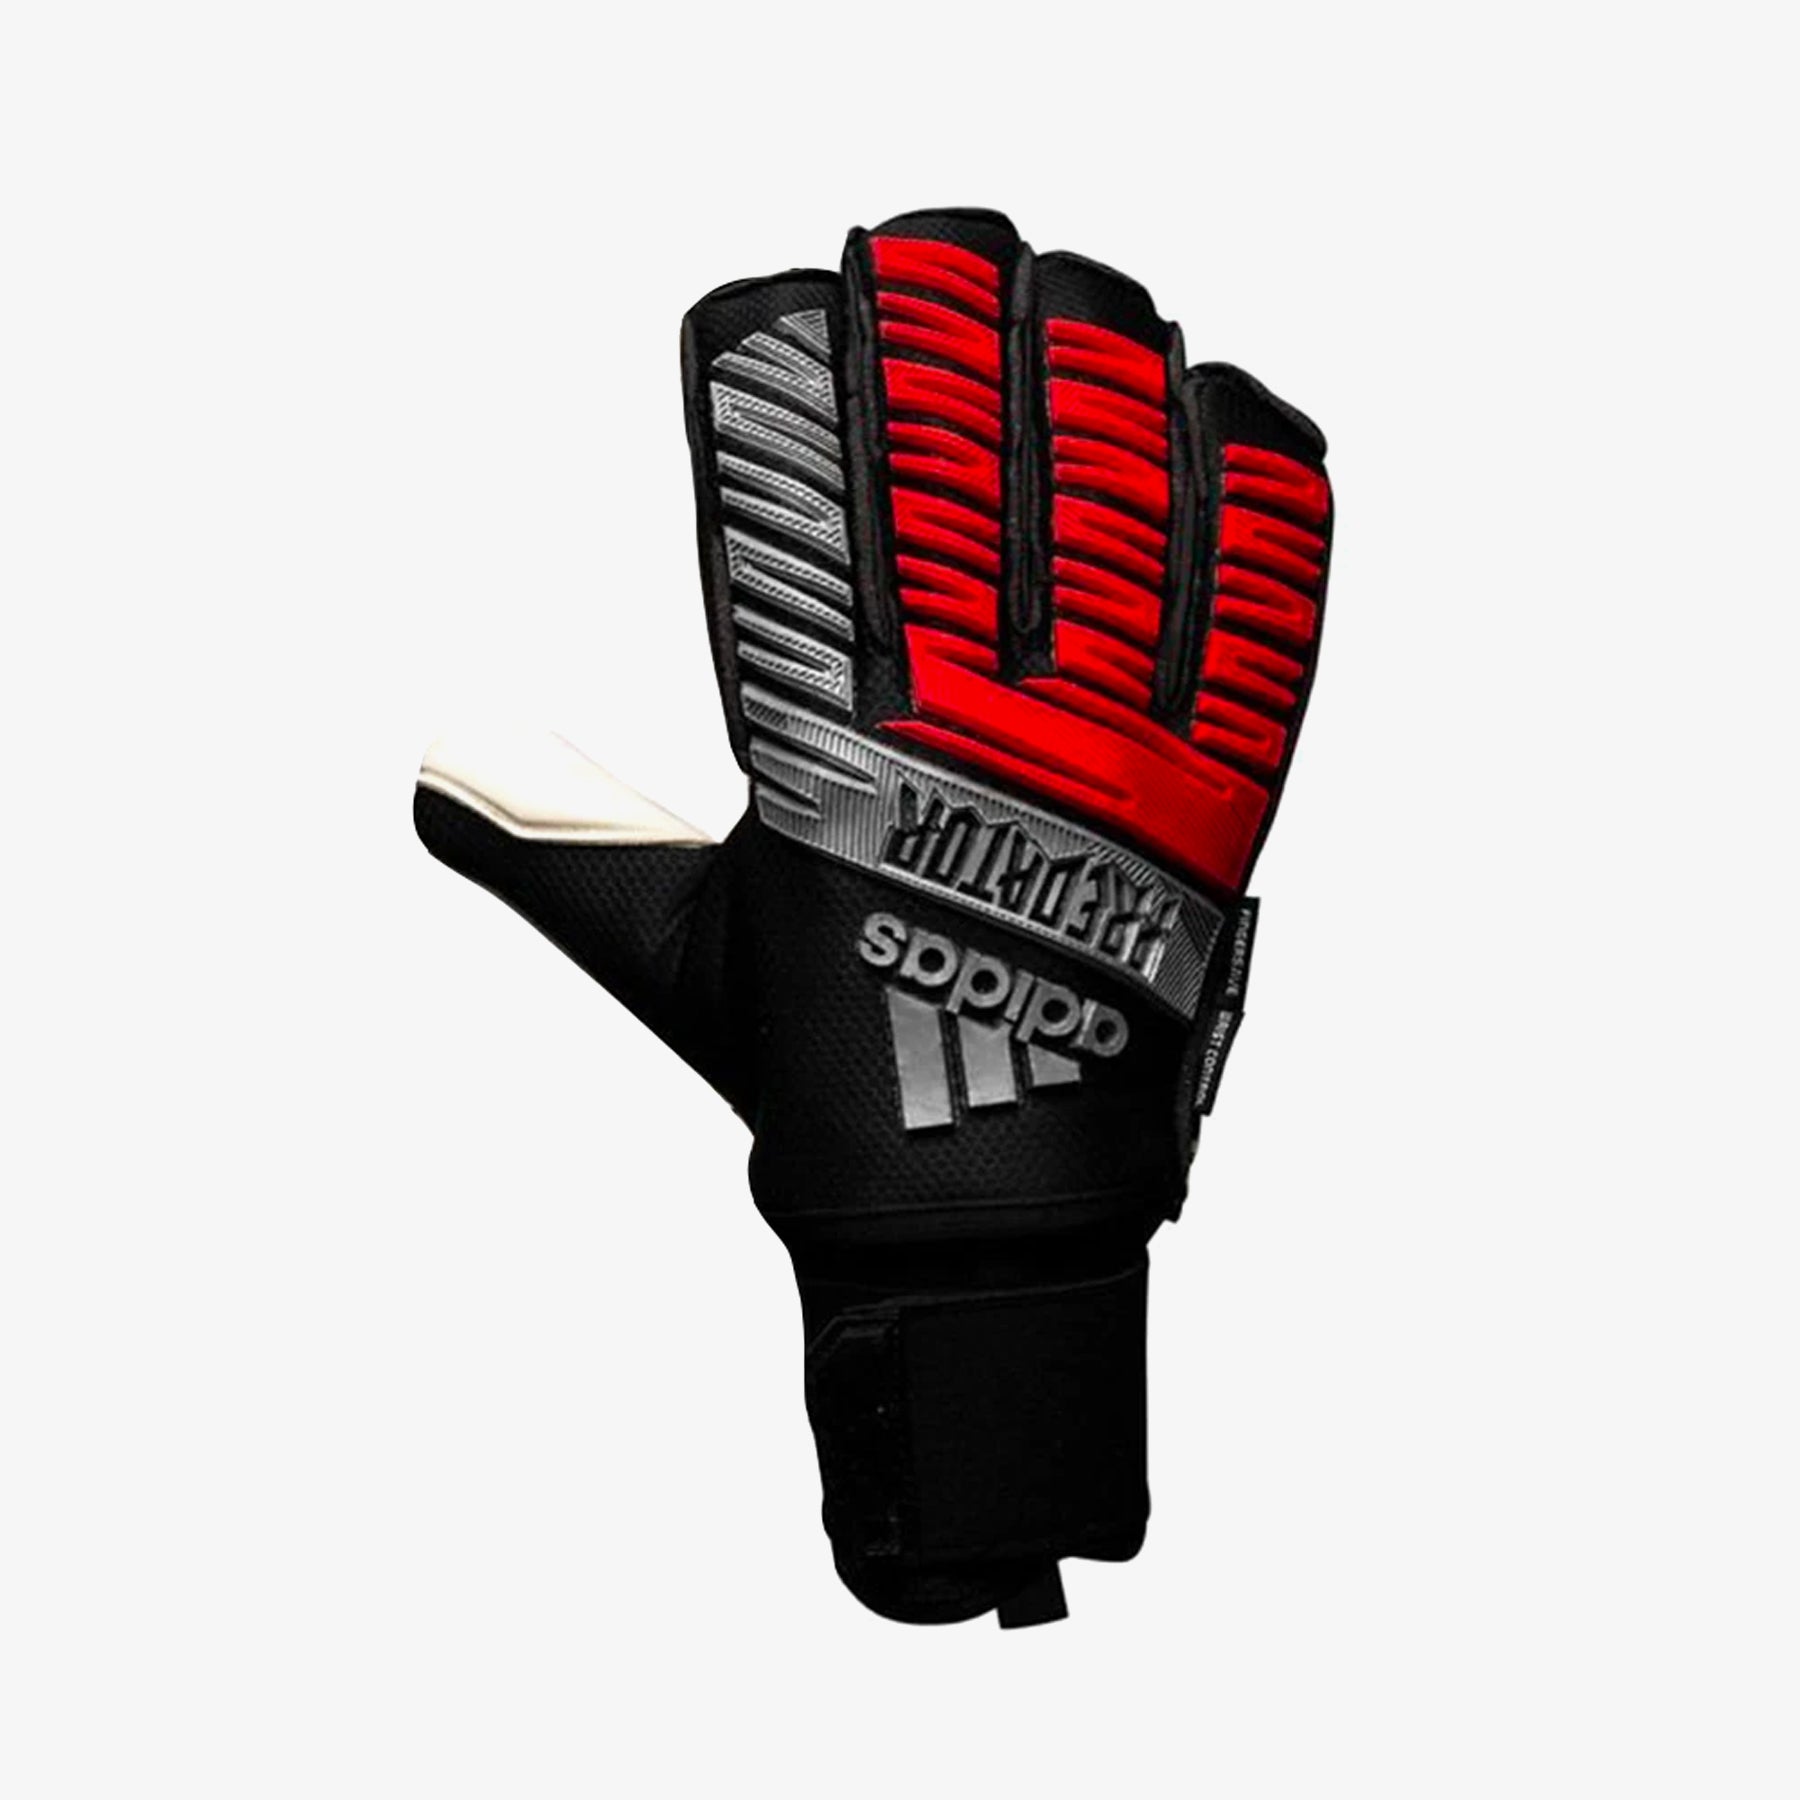 Predator Ultimate Soccer Glove